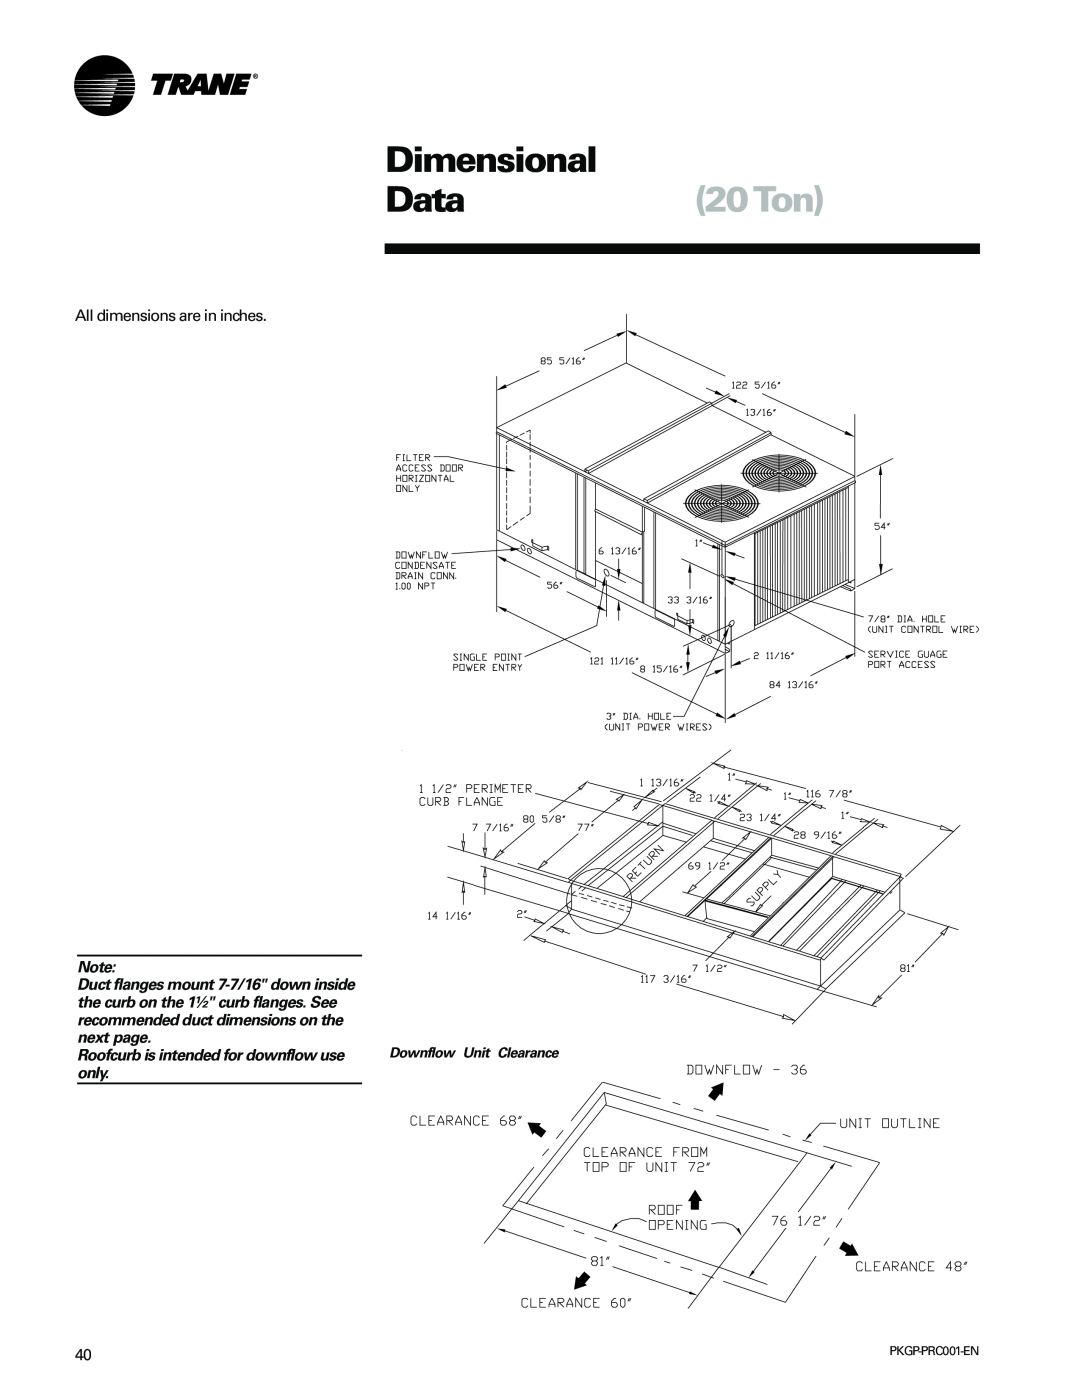 Trane PKGP-PRC001-EN manual Dimensional, Data20Ton 